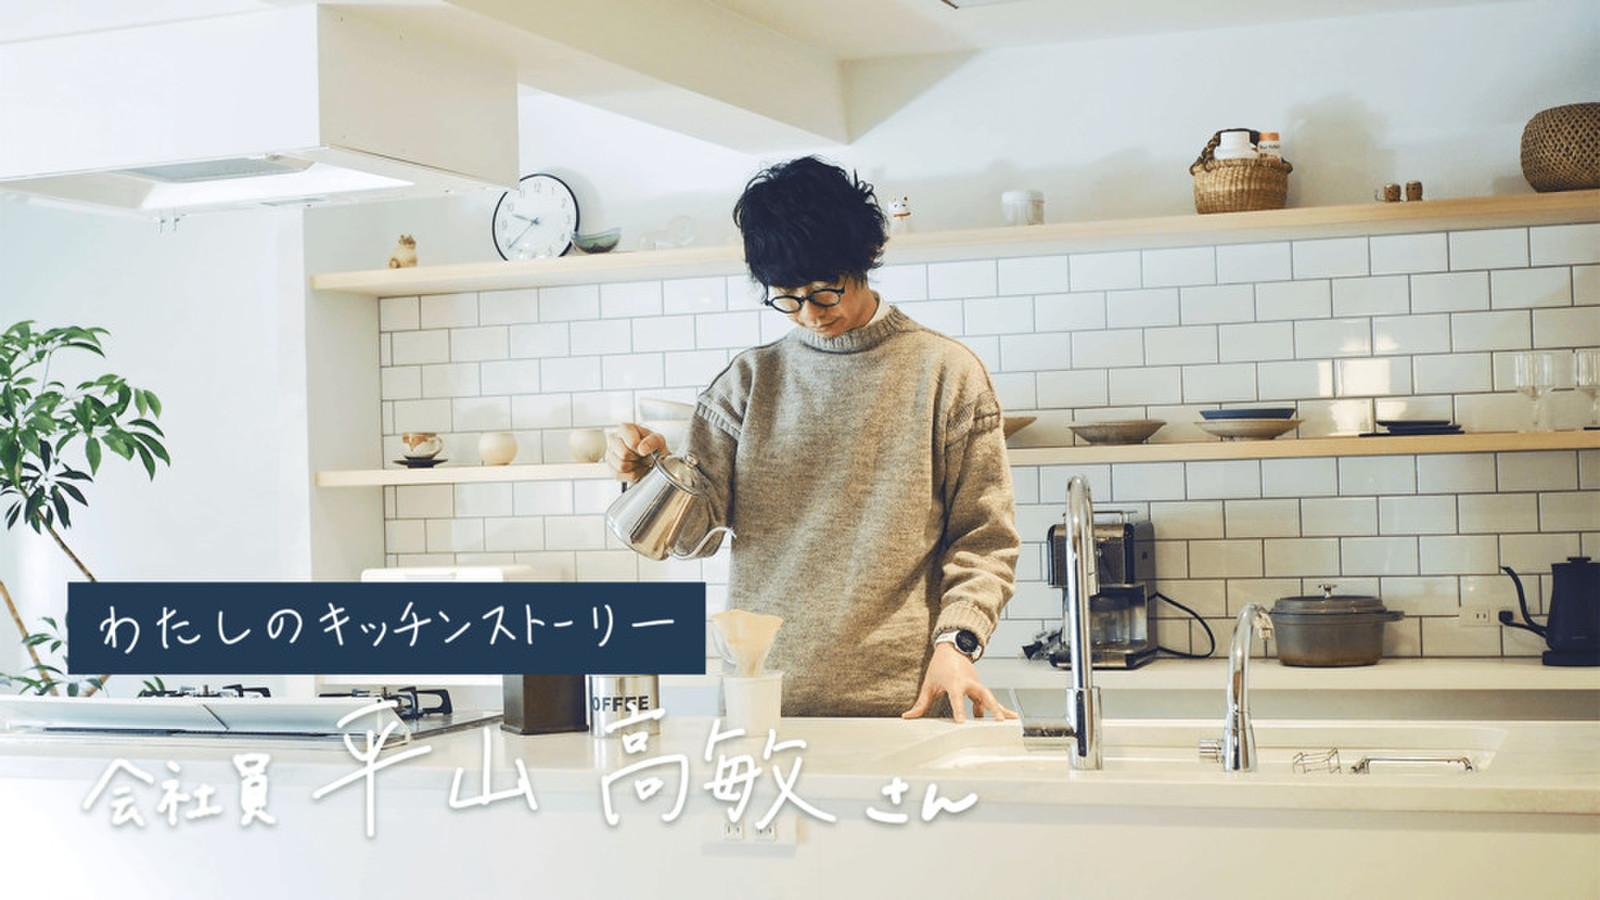 リノベーションは「通過点」。平山高敏さんのキッチンとダイニングから始める、心地よい家のつくり方